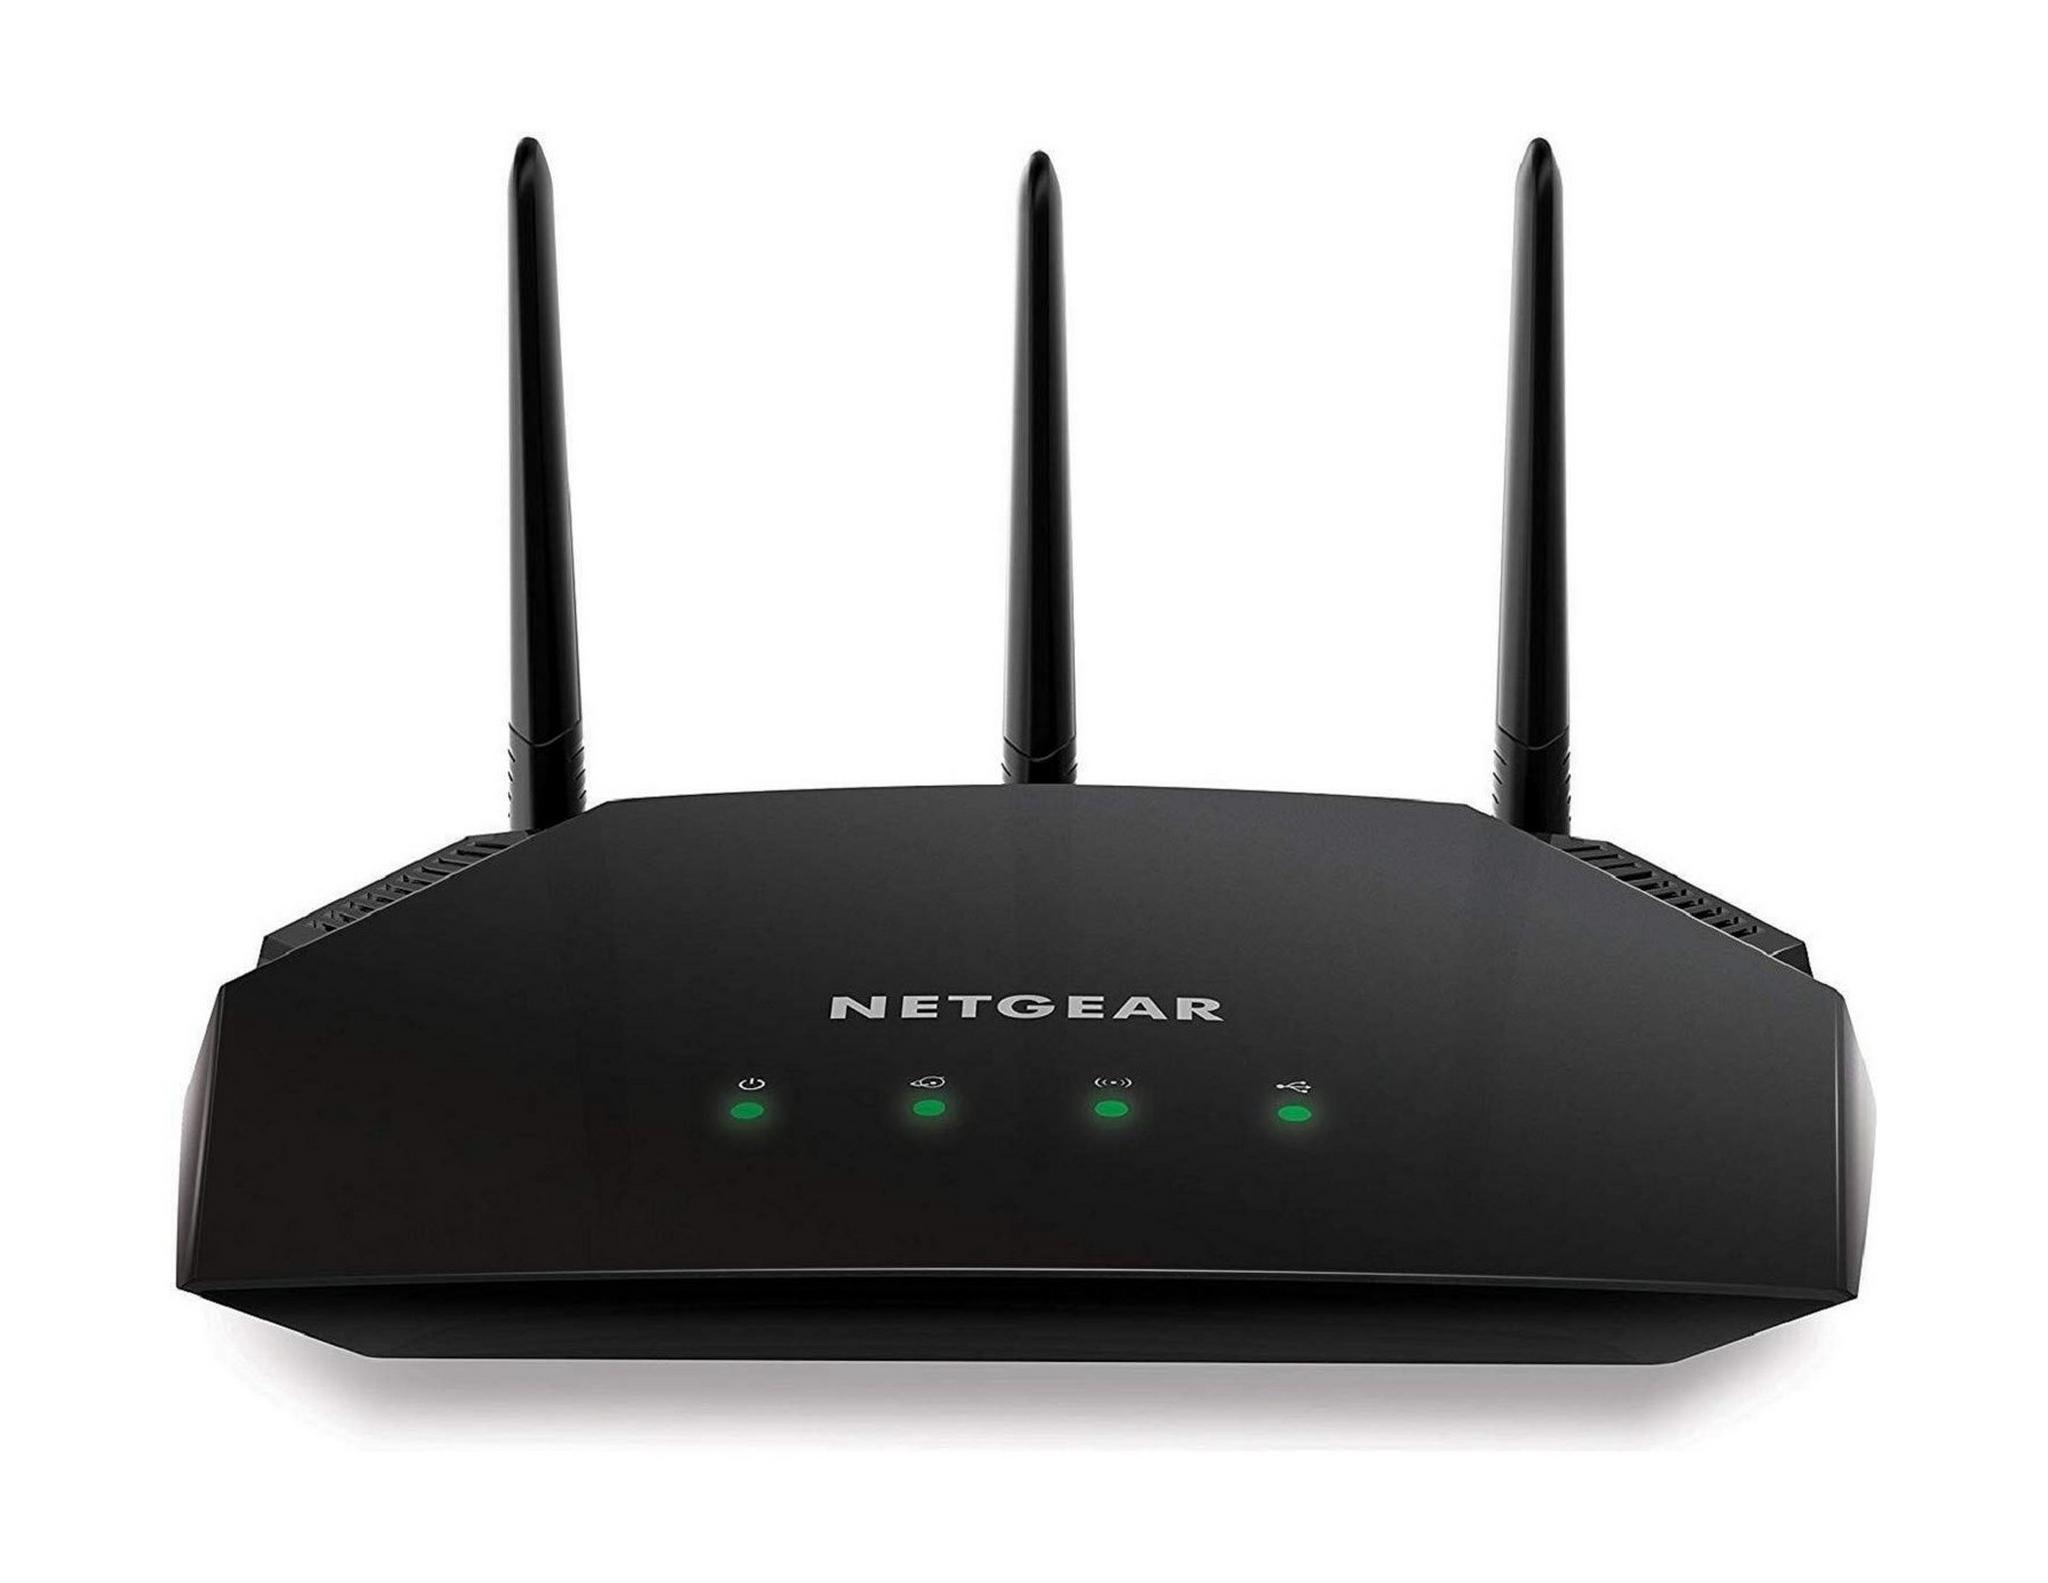 Netgear R6350 AC1750 Smart WiFi Router - Black